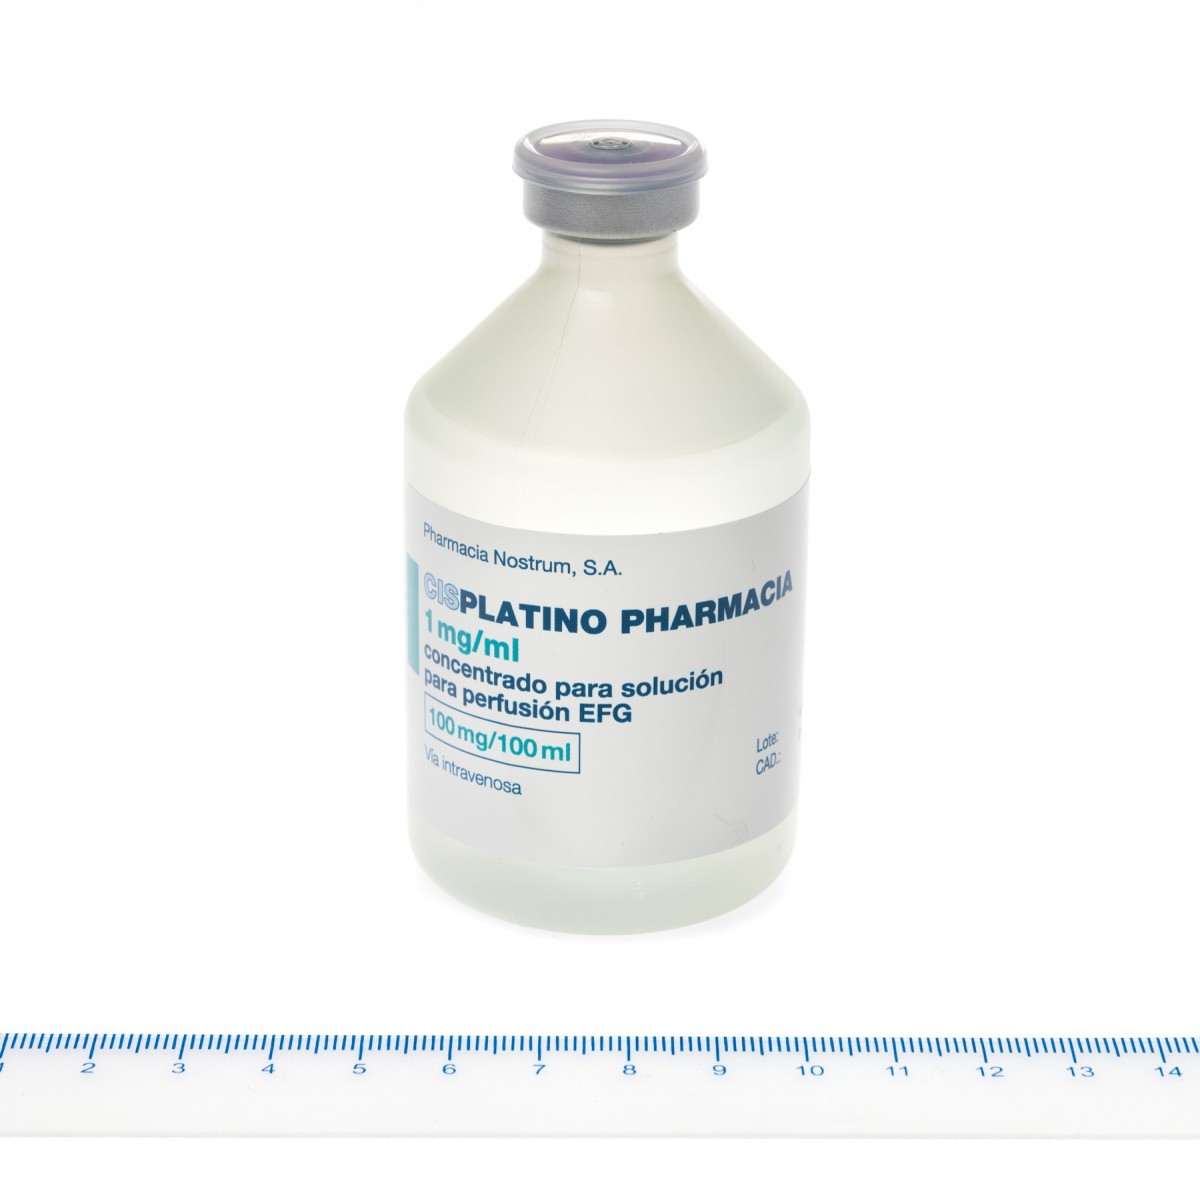 CISPLATINO PHARMACIA 1 mg/ml CONCENTRADO PARA SOLUCION PARA PERFUSION EFG , 1 vial de 50 ml fotografía de la forma farmacéutica.